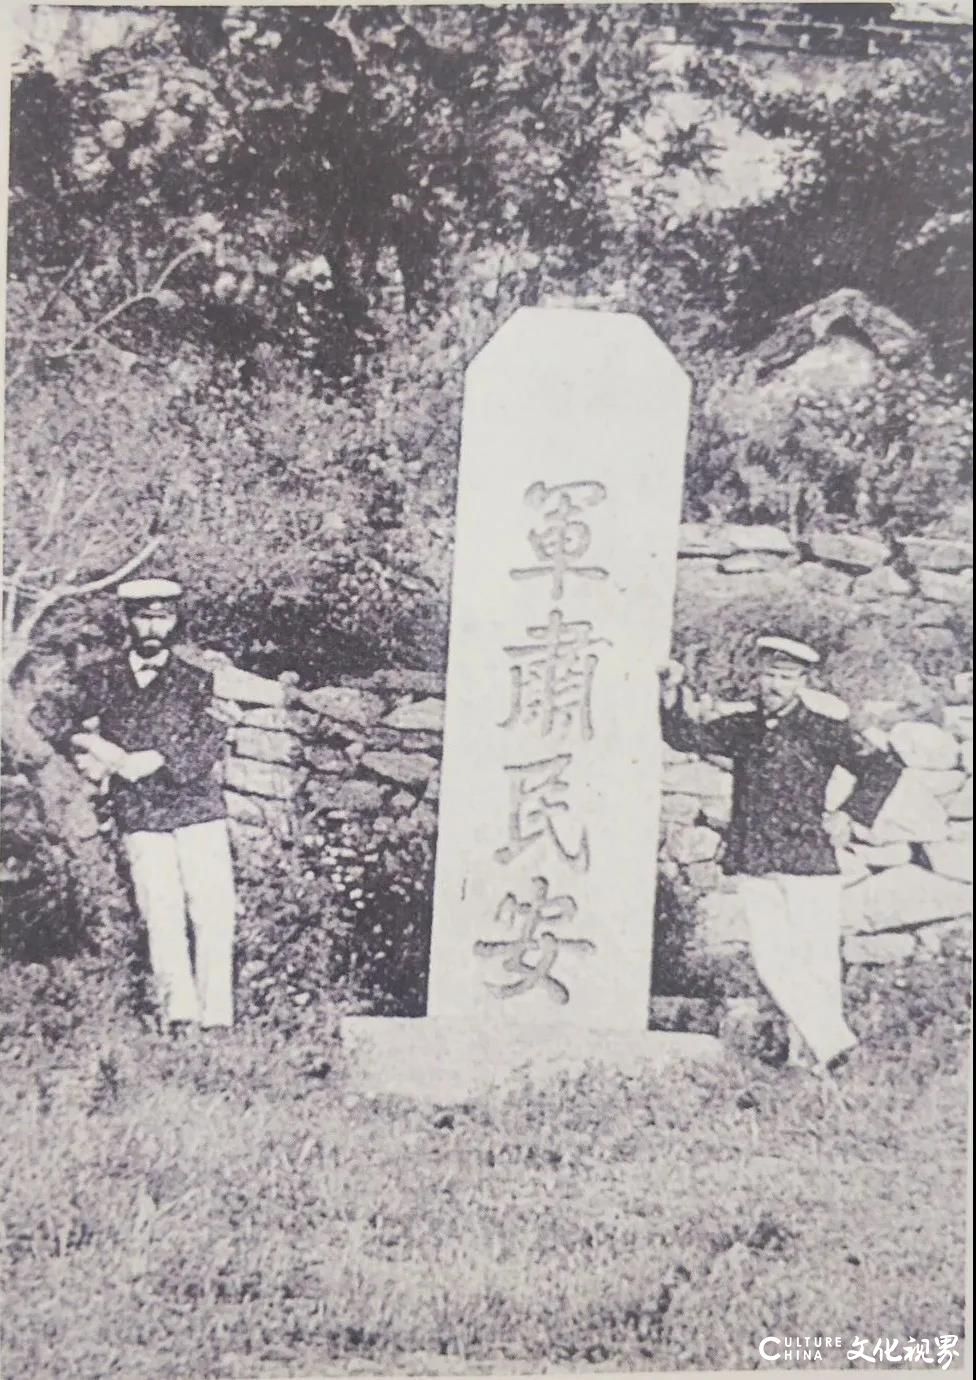 柔远安迩、治军爱民、军肃民安，威海刘公岛上的三块功德碑诉说着百年沧桑